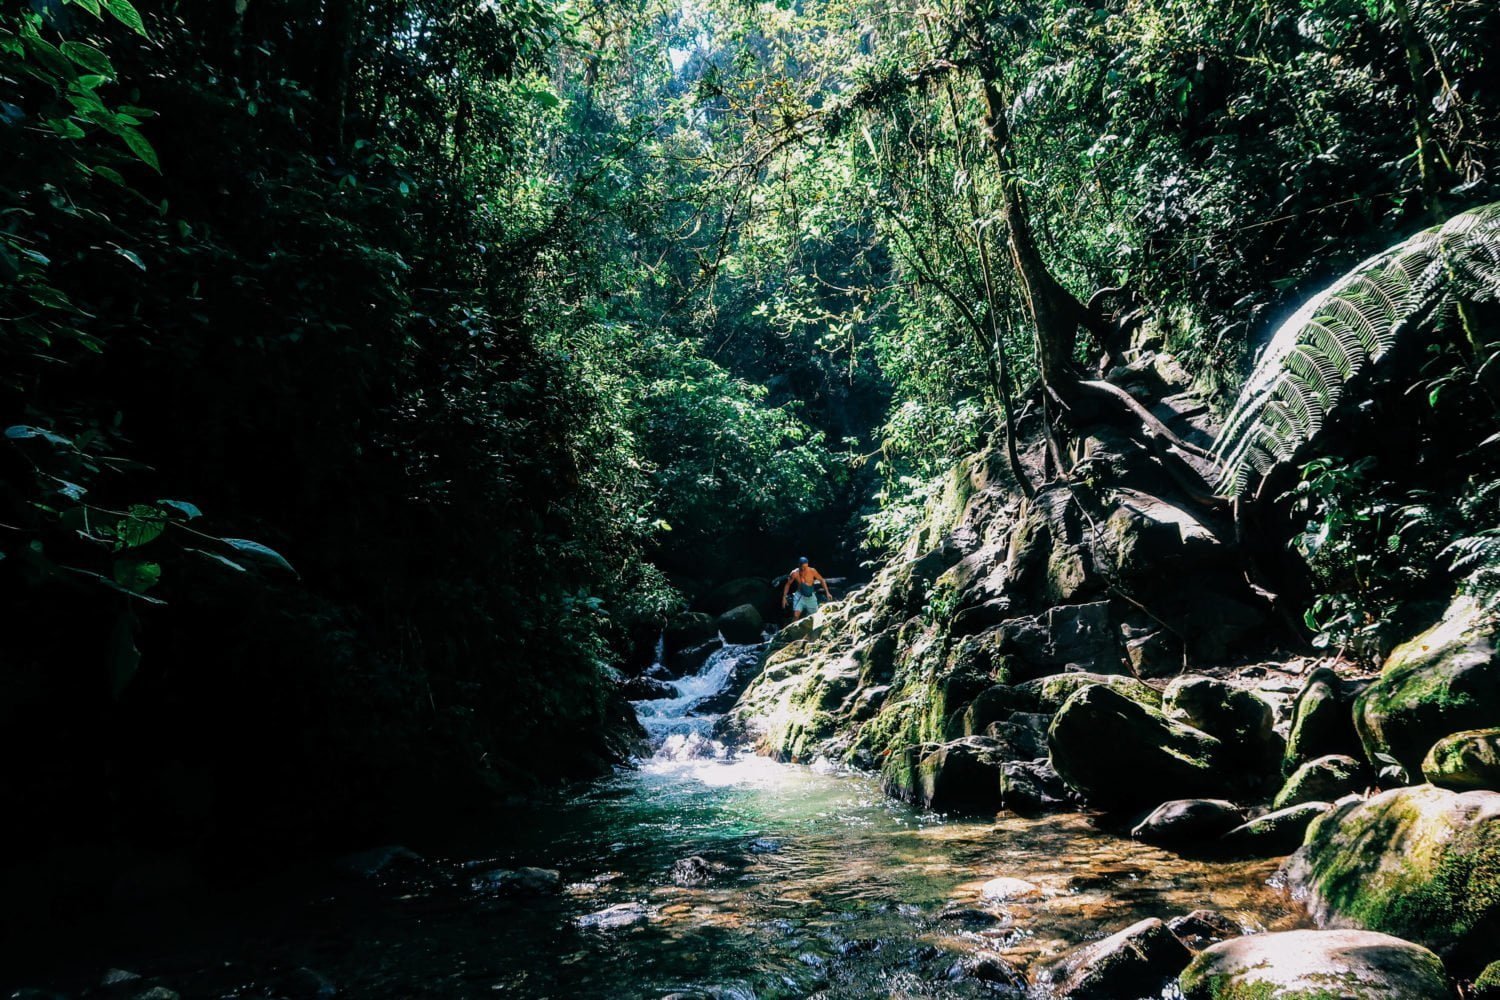 Arenales hiking waterfall envigado to tylko jedna z wielu rzeczy do zrobienia w envigado